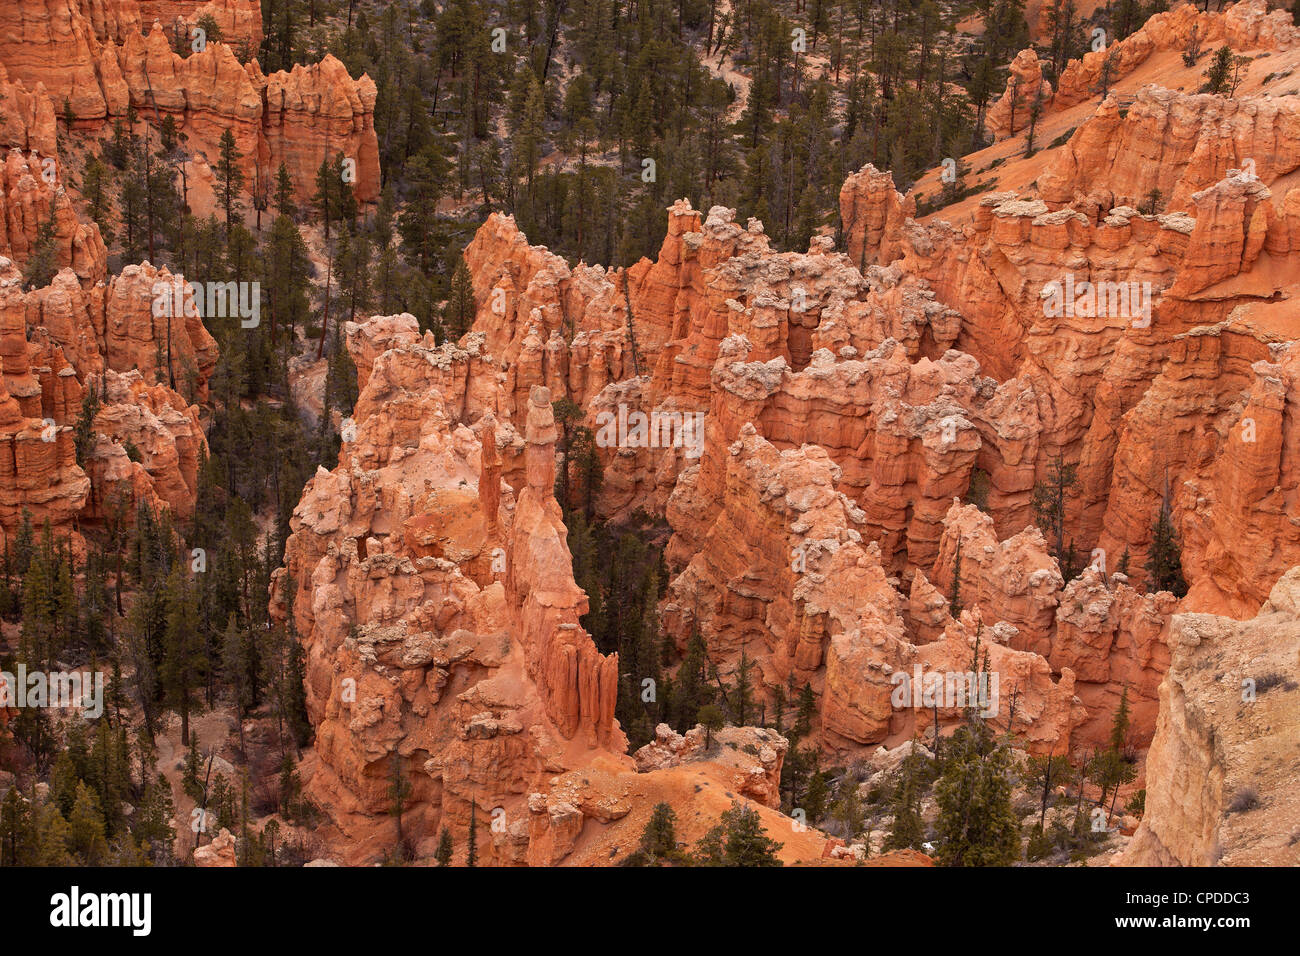 Bryce-Canyon-Nationalpark im Süden von Utah. Robust und dramatischen roten Stein Felsen, interessante Formationen im Tal. Don Despain Stockfoto